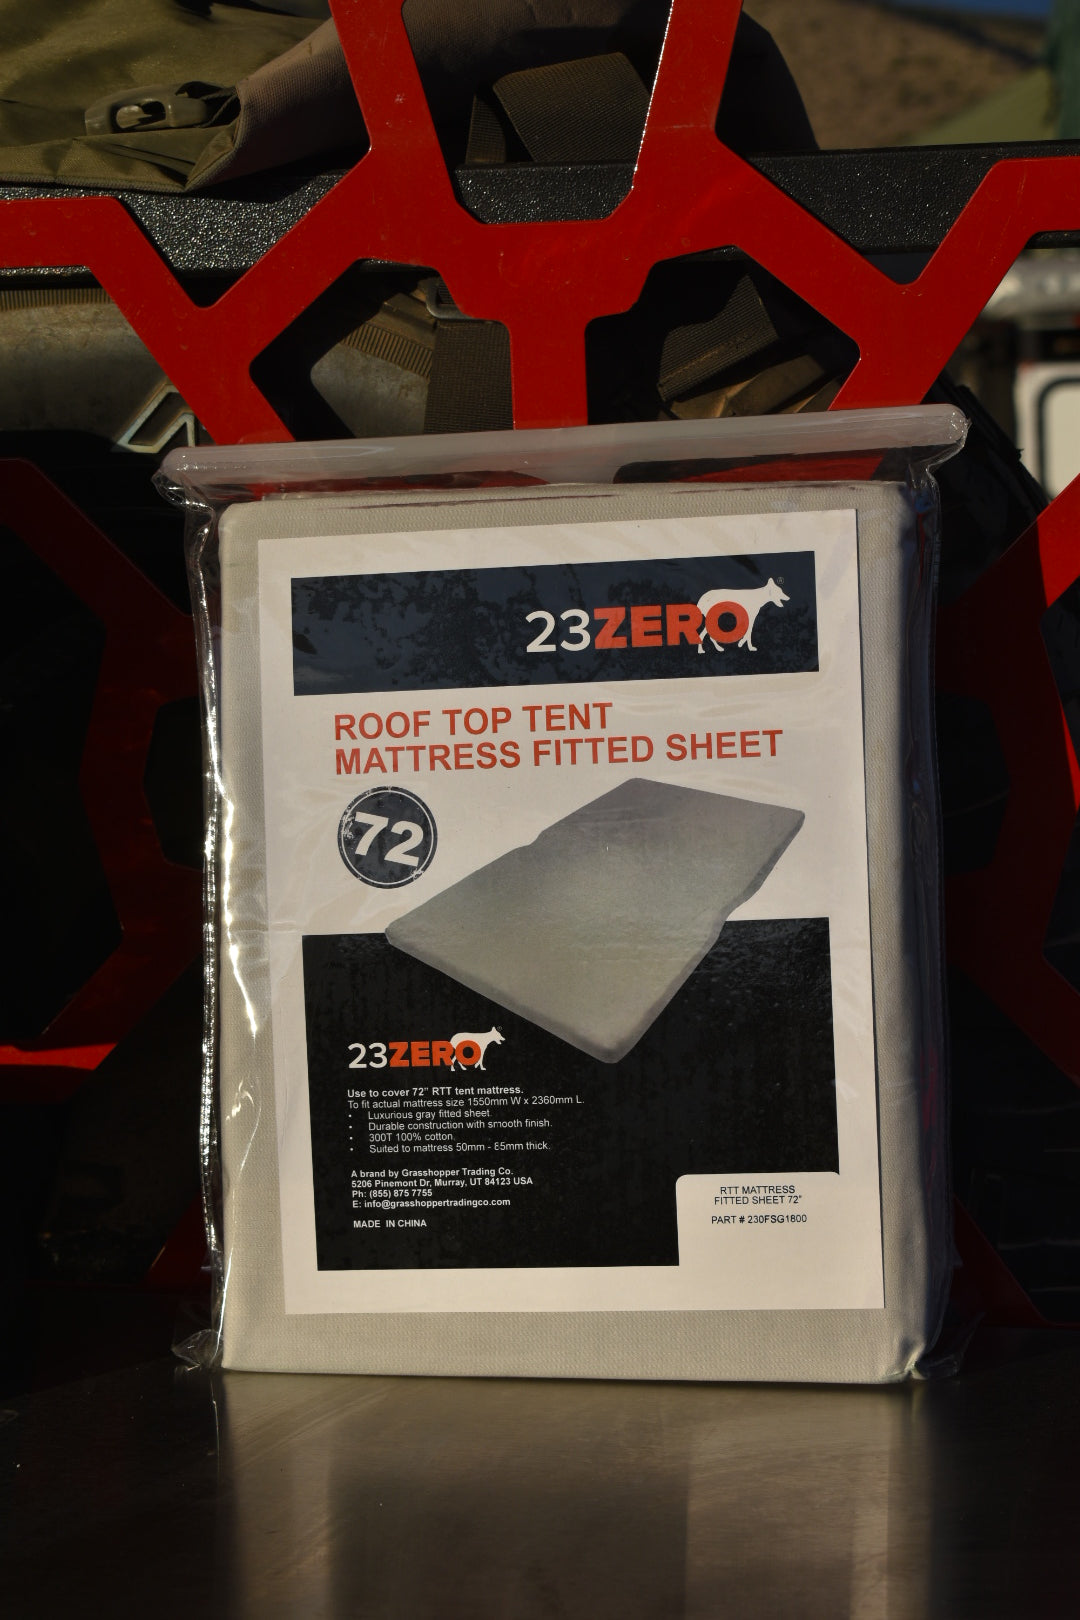 23Zero Roof Top Tent Mattress Fitted Sheet 72"